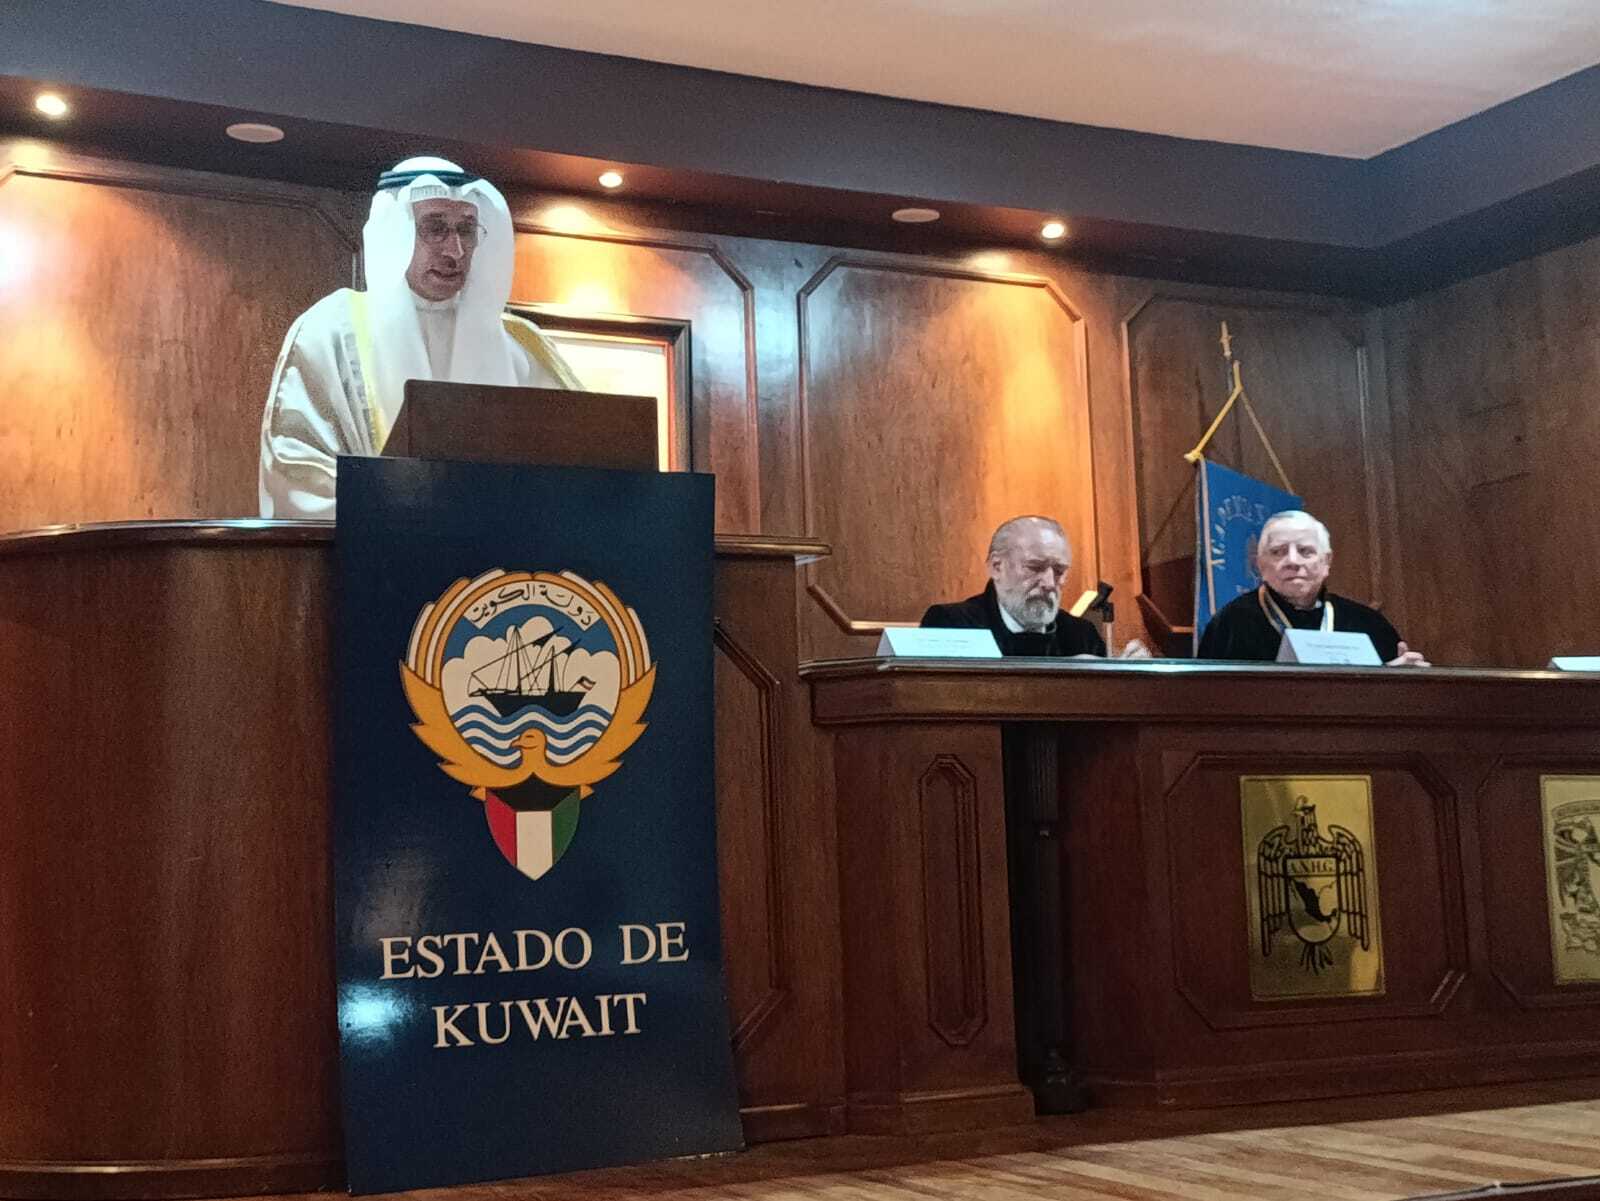 el embajador del Estado de Kuwait en México, Salah S. Al-Haddad, expuso la conferencia “Historia y Política Exterior de Kuwait”